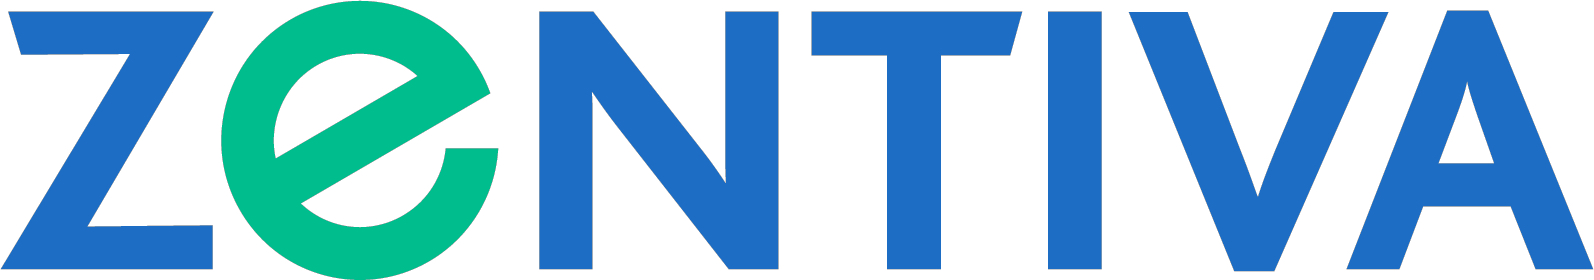 Logo for Zentiva Pharma UK